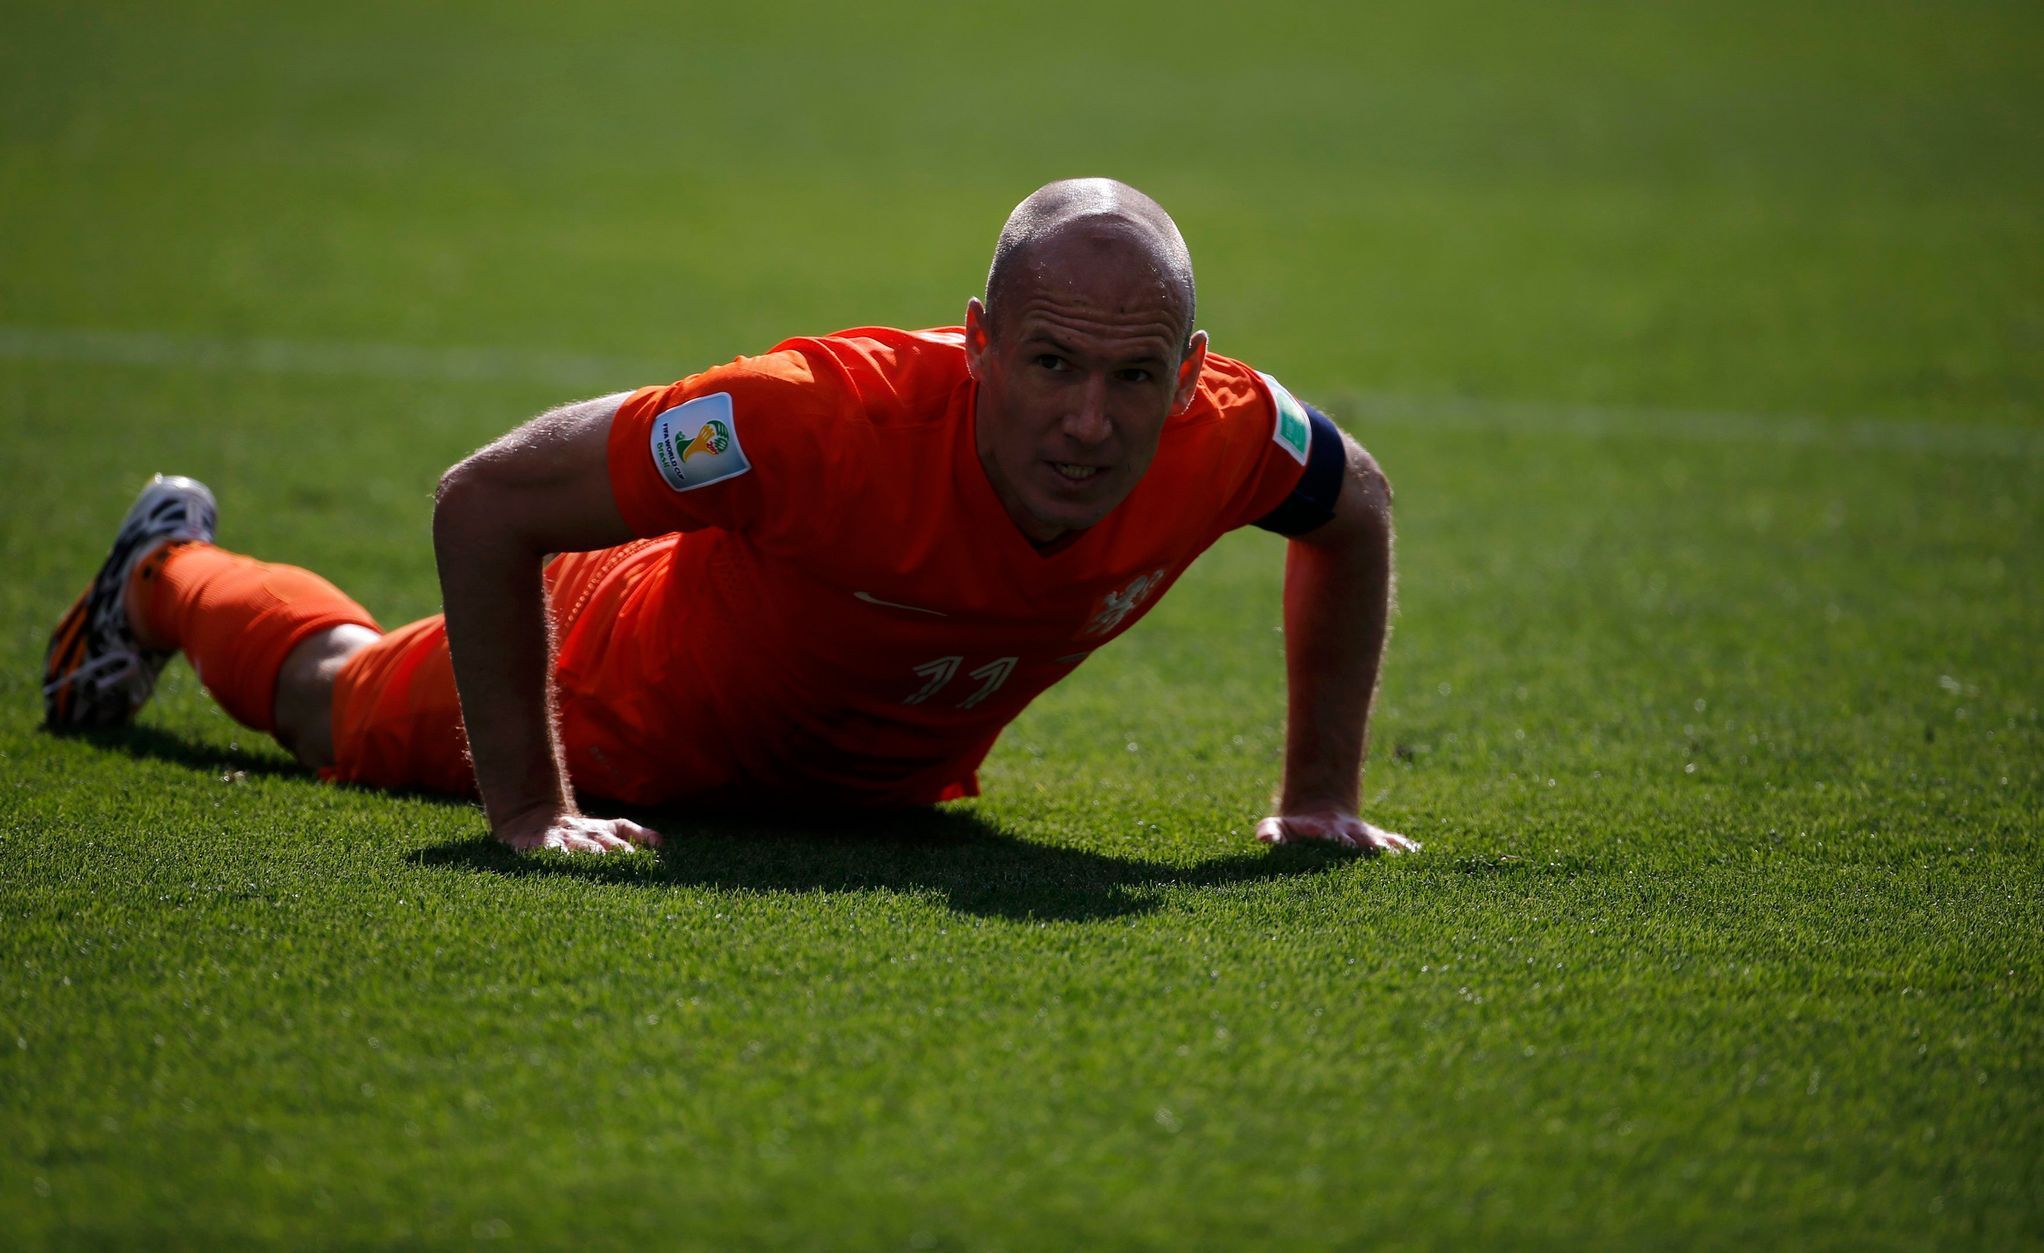 MS 2014, Nizozemsko-Chile: Arjen Robben